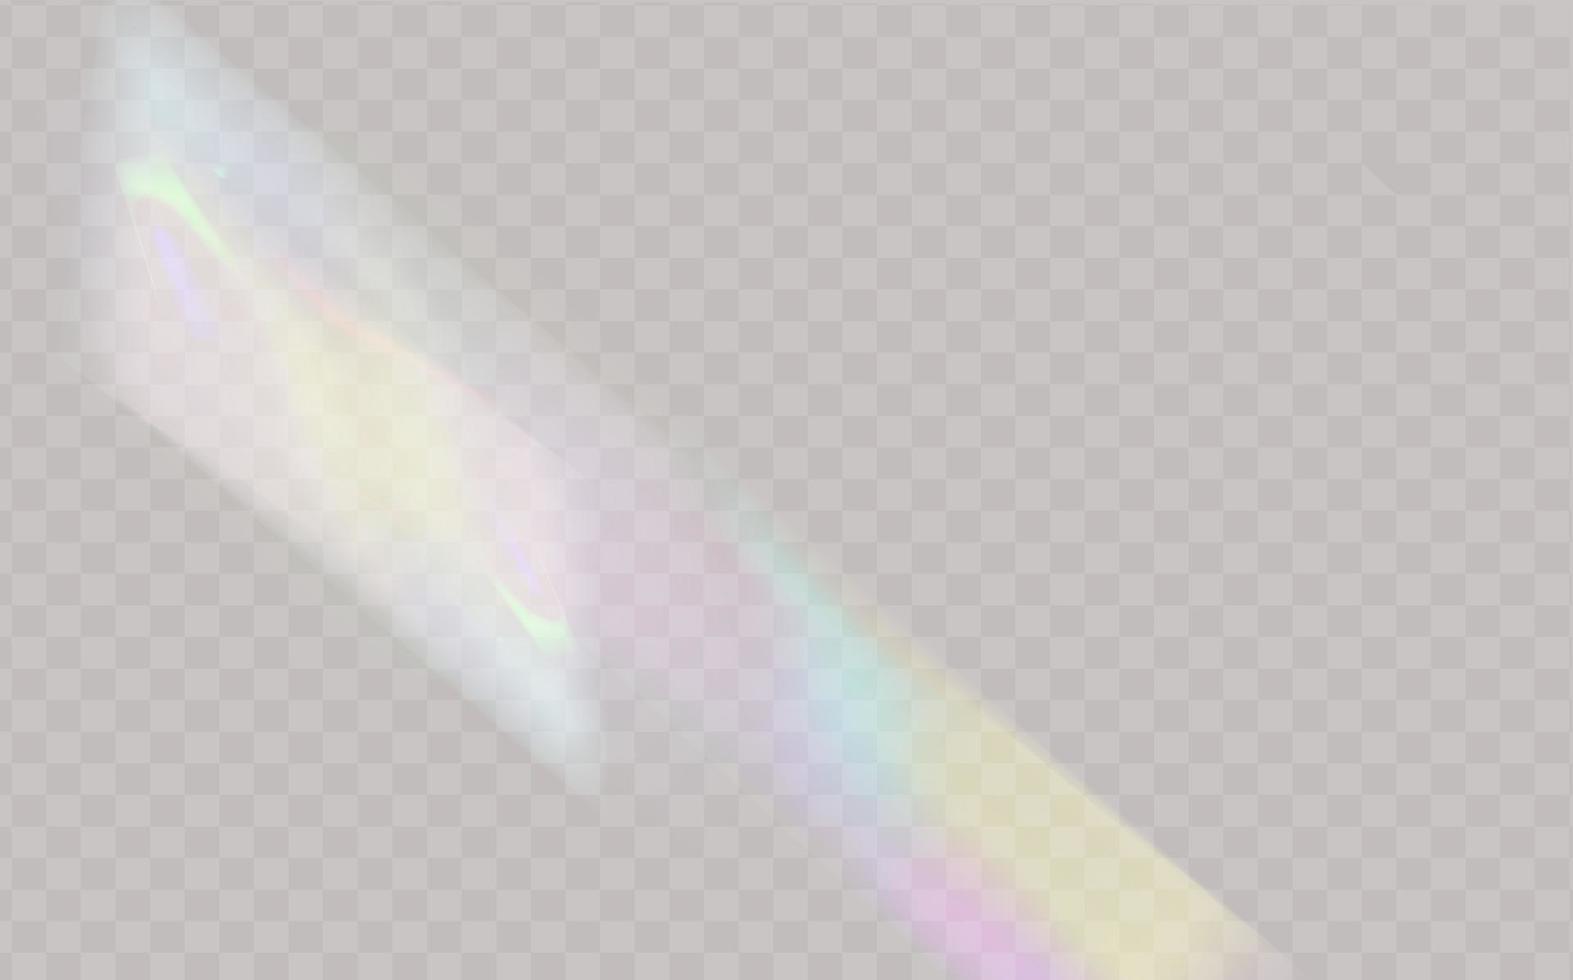 en uppsättning av färgrik vektor lins, kristall regnbåge ljus och blossa transparent effekter.överlägg för bakgrunder.triangulära prisma begrepp.